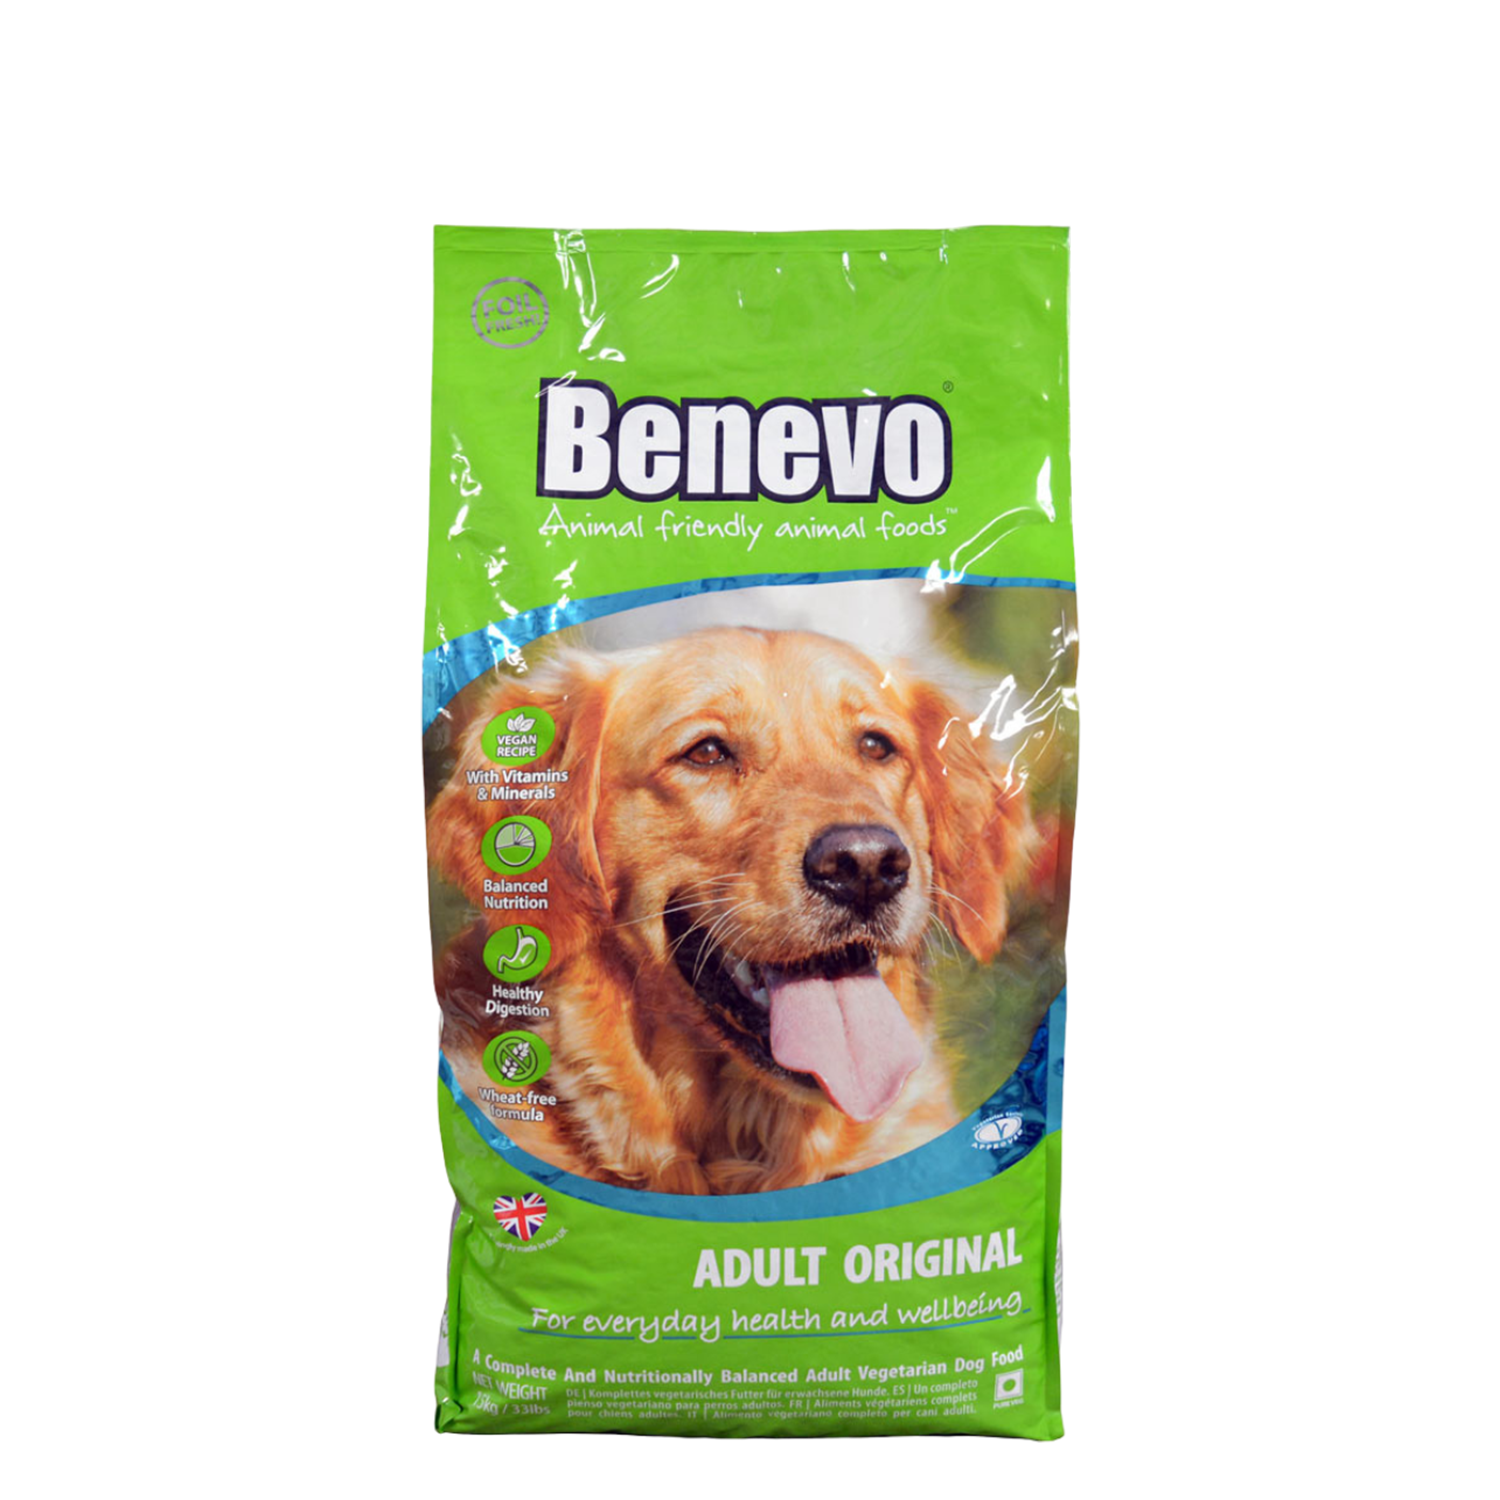 Benevo Dog Original